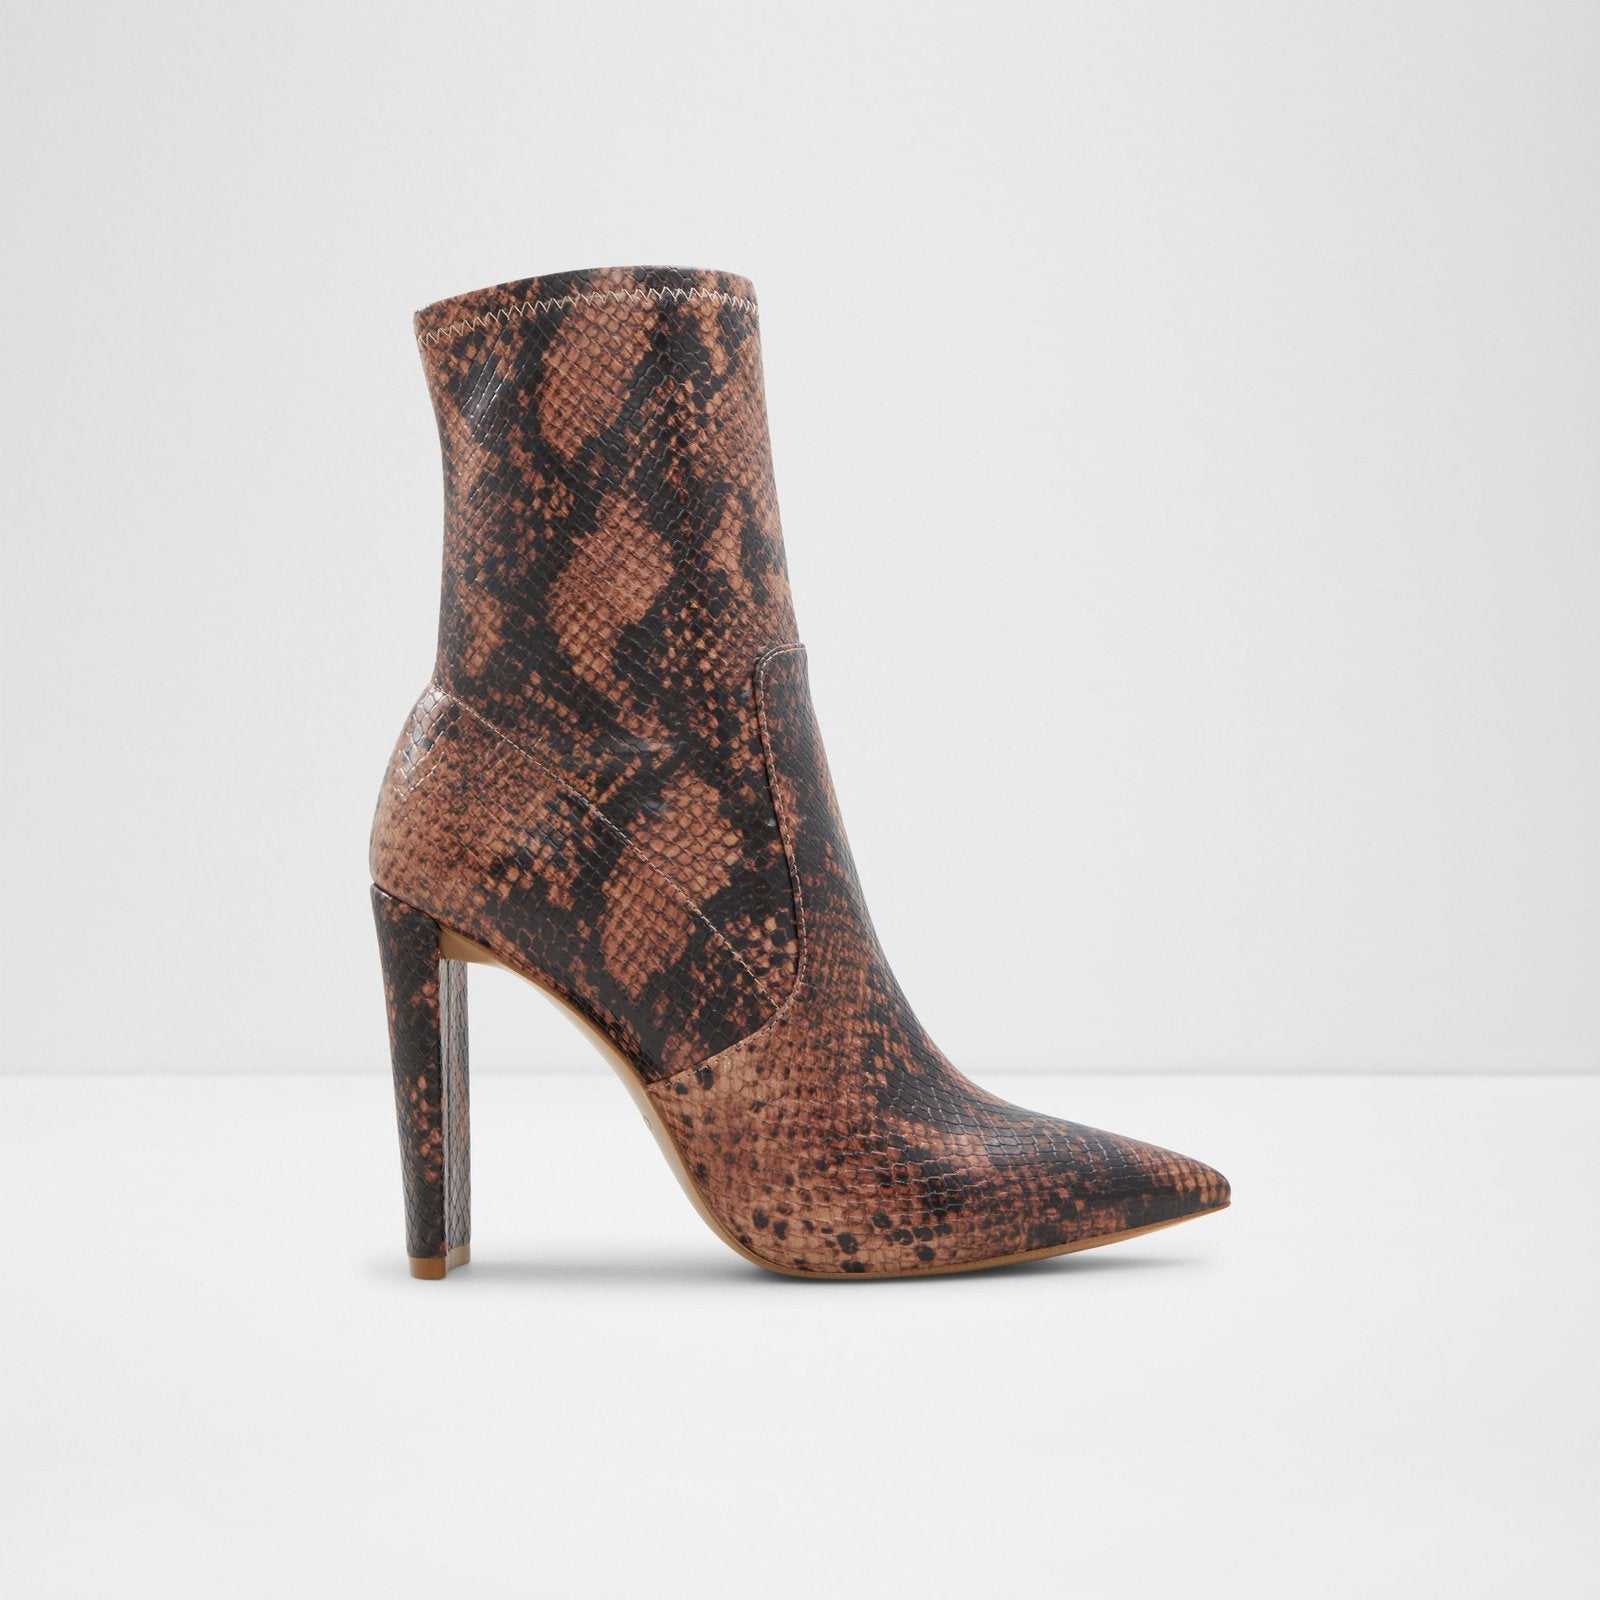 Aldo Women’s Heeled Boots Dove (Cognac)